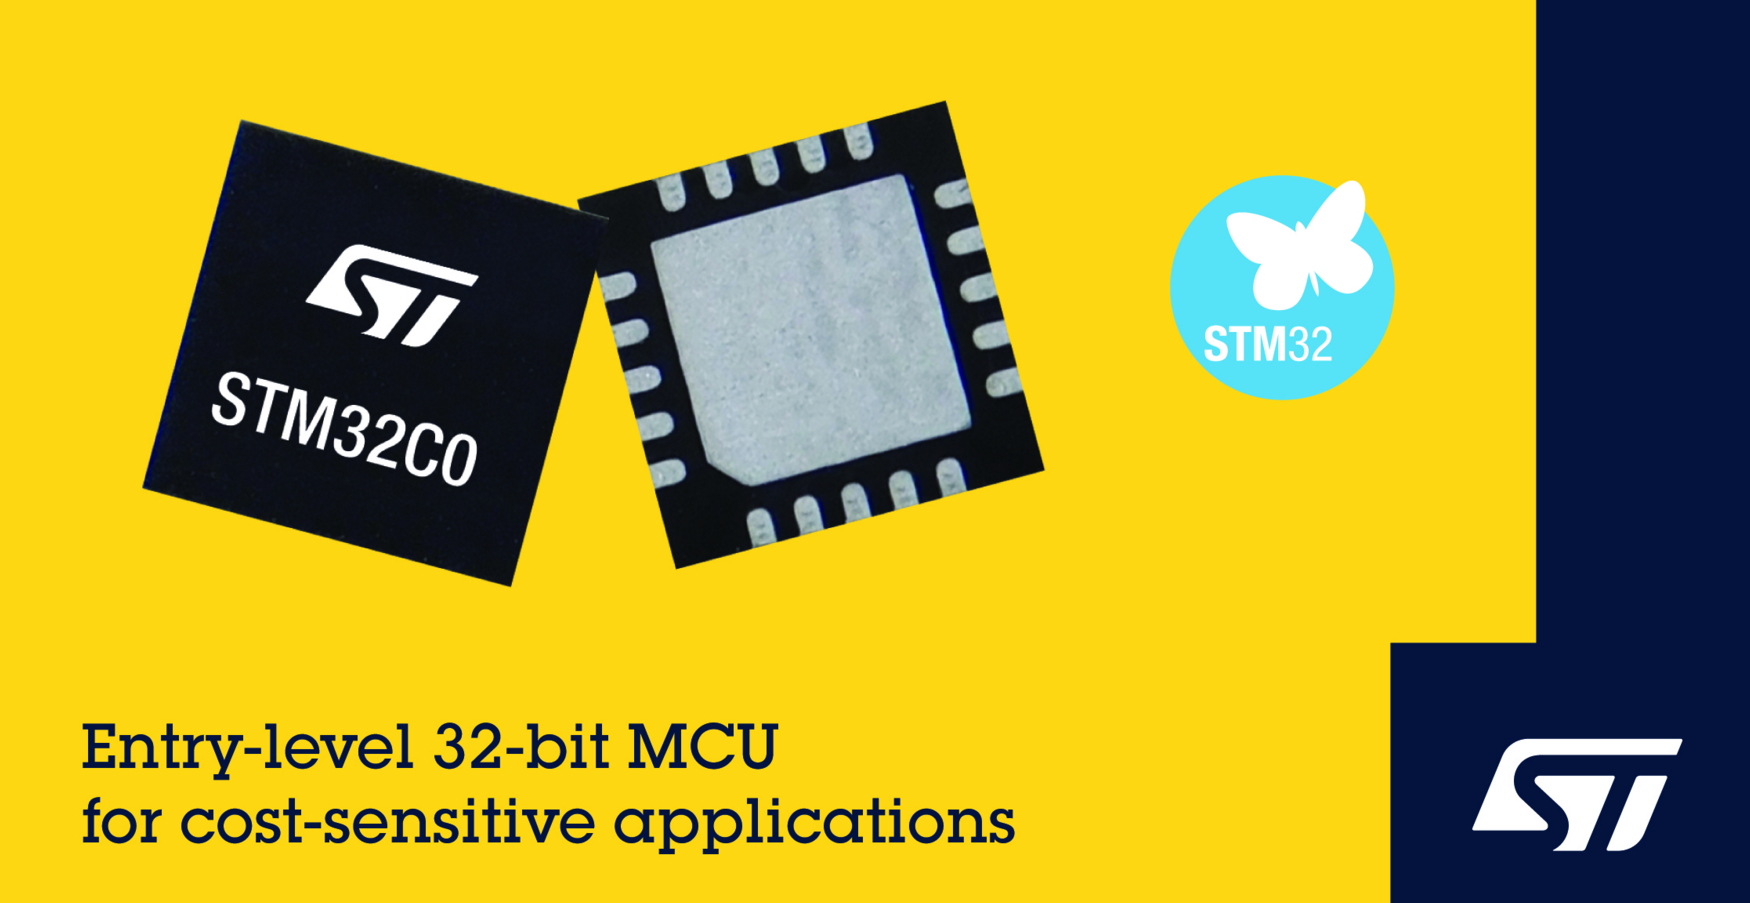 意法半导体发布STM32C0系列MCU 让成本敏感的8位应用也能享受32 位性能